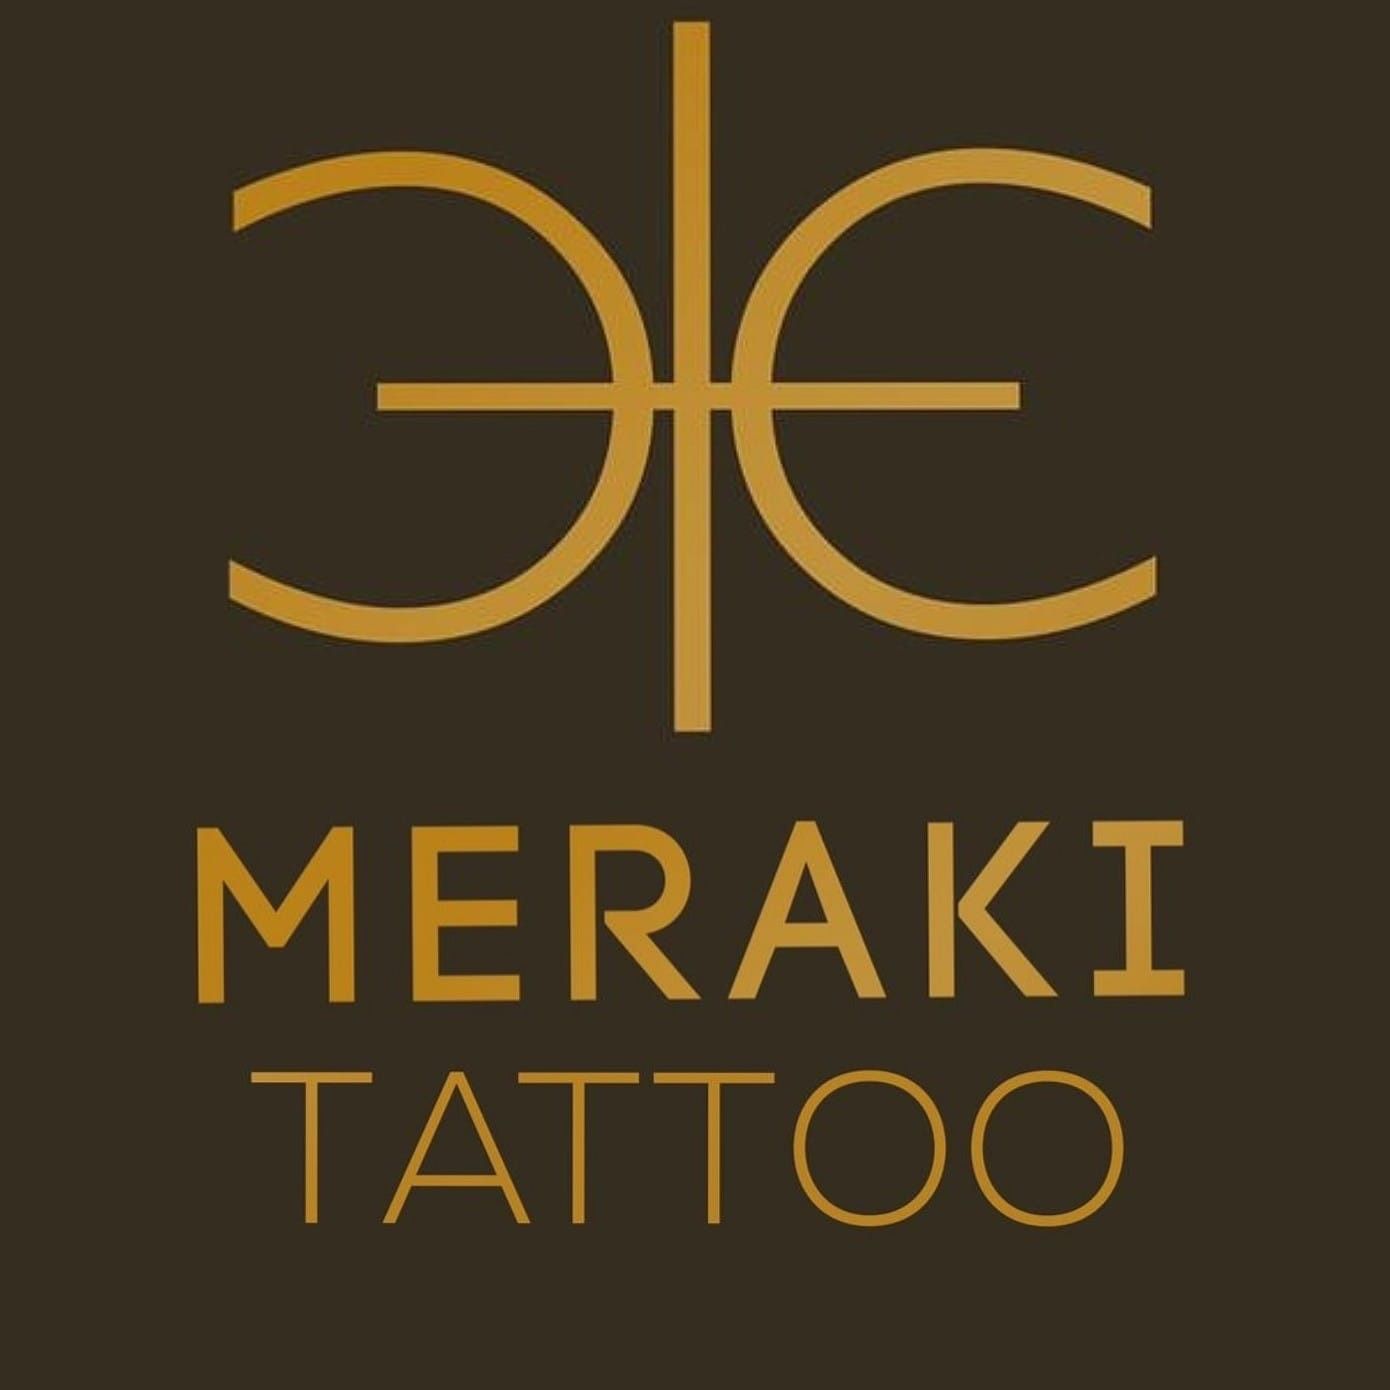 Meraki Tattoo  Art Studio  Best In Ajmer  Ketline